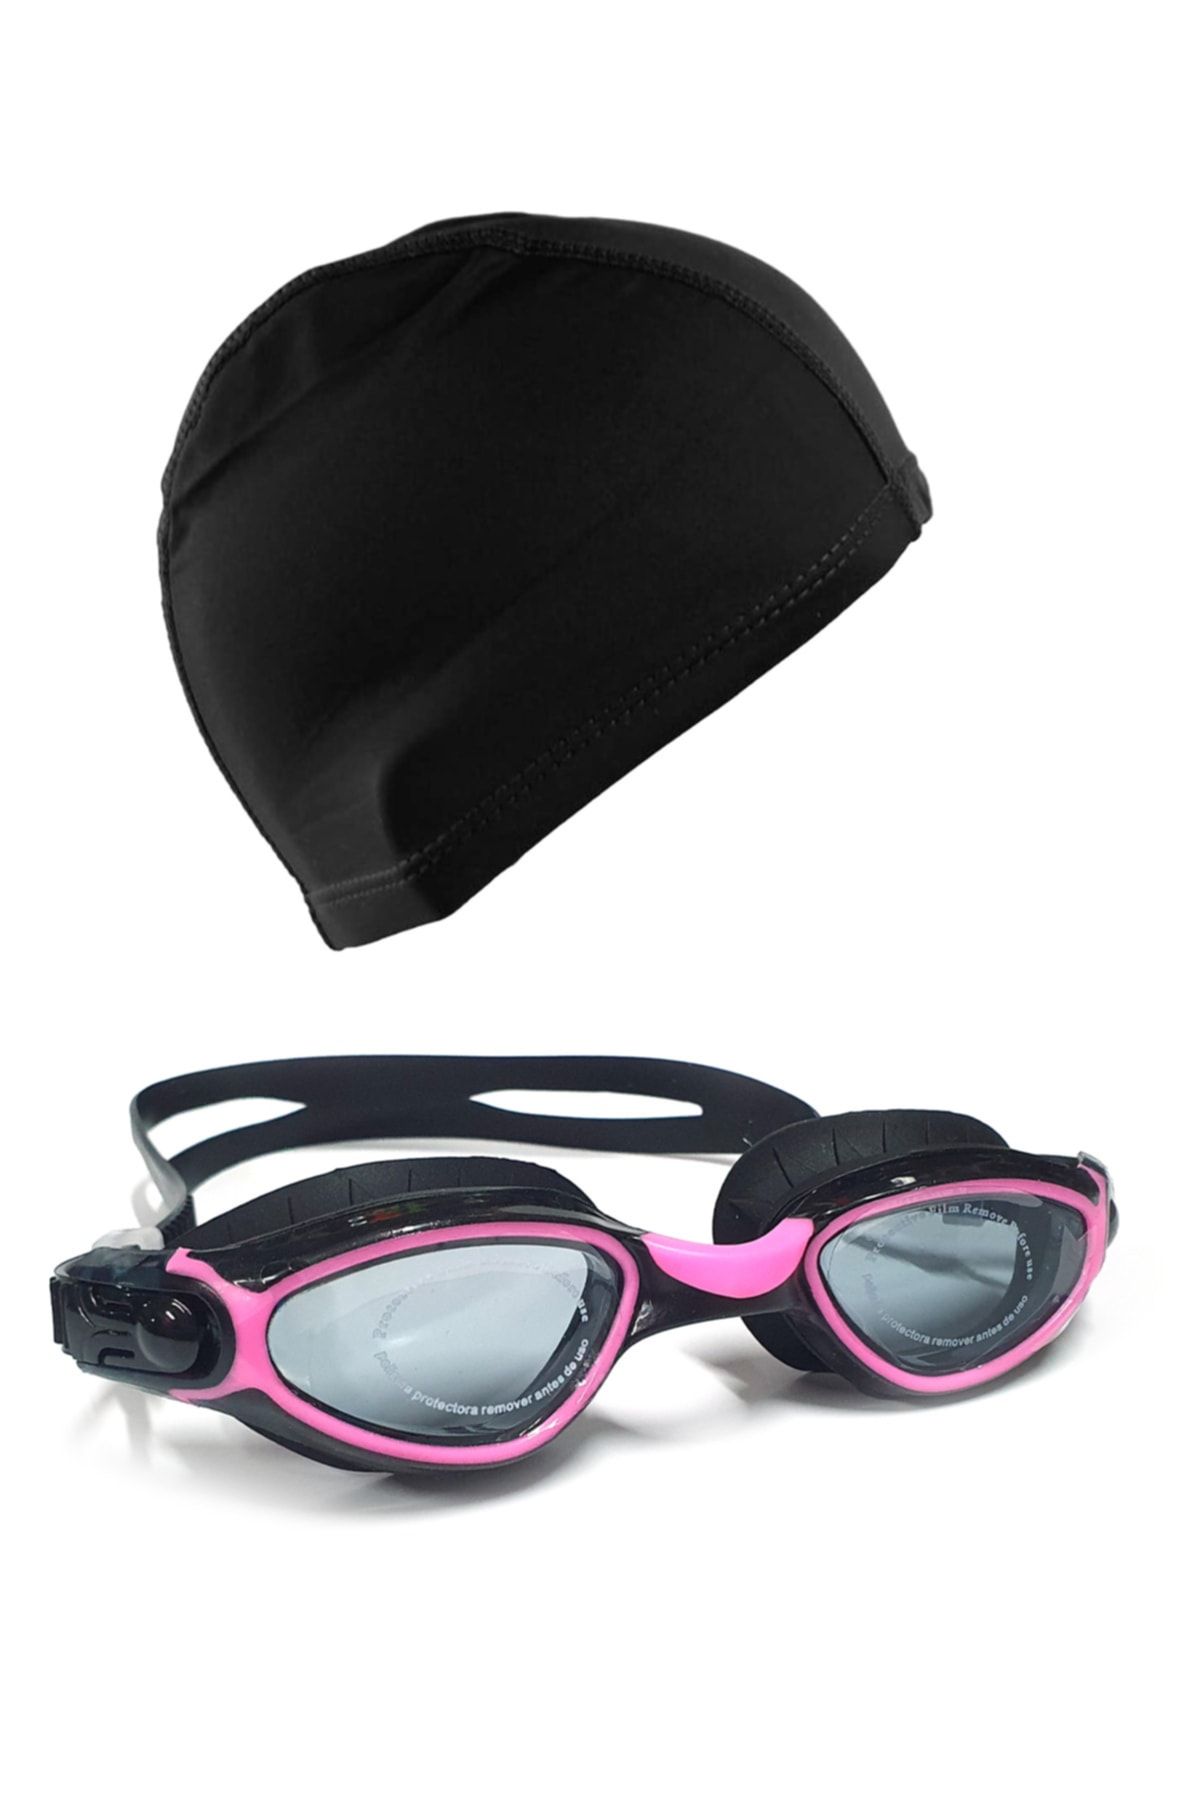 Tosima Pro Silikon Yüzücü Gözlüğü Ve Likra Yüzücü Bonesi Seti Havuz Seti